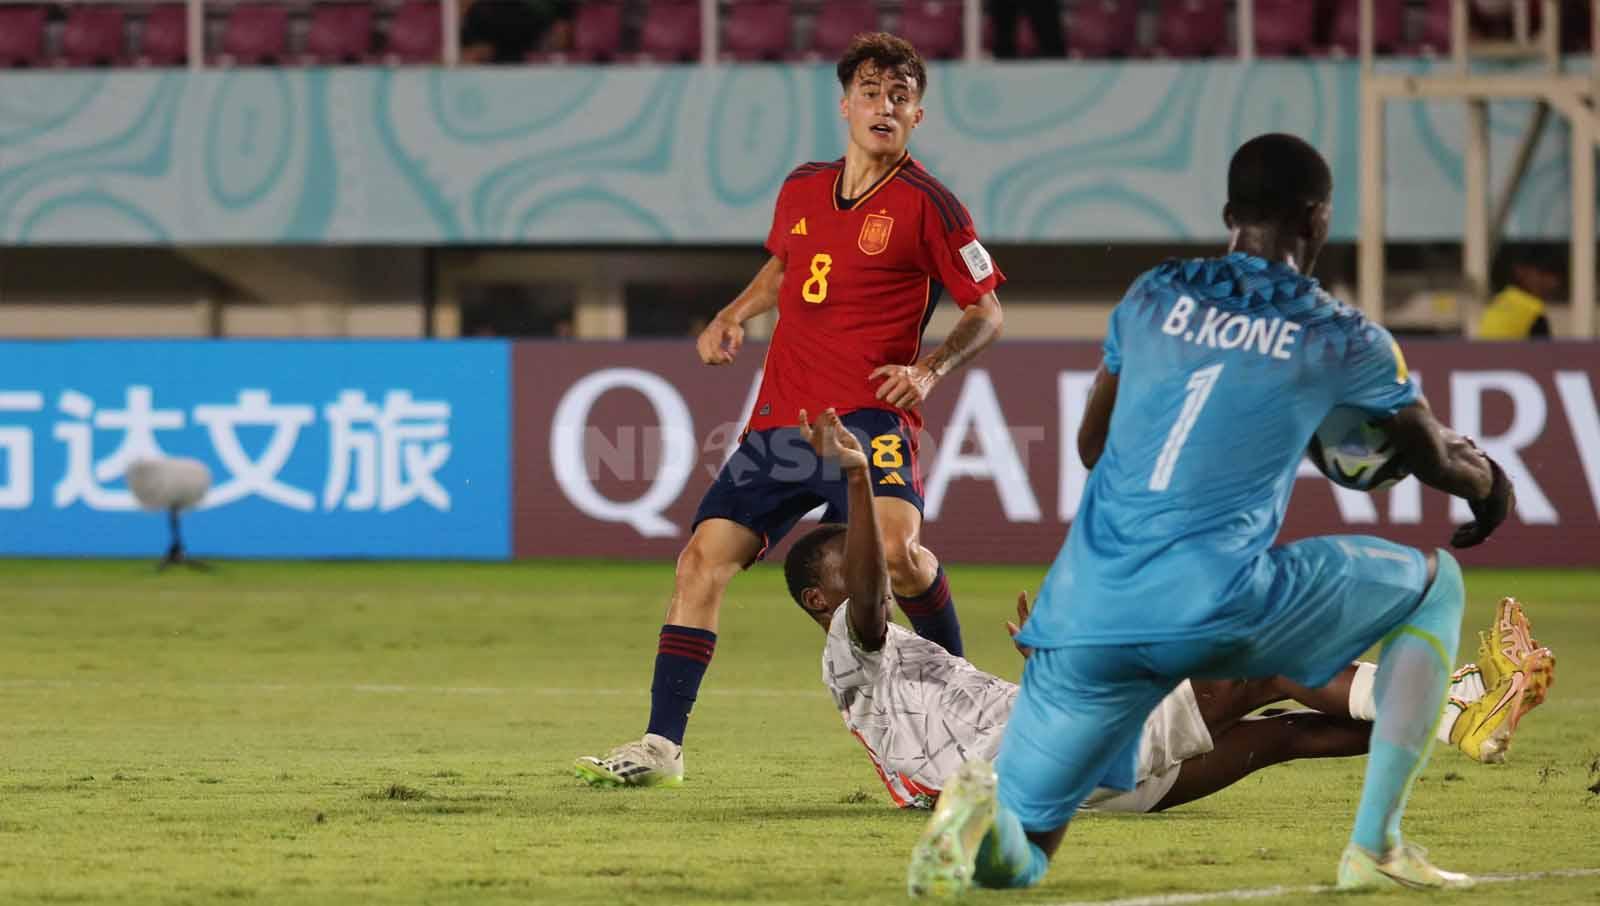 Pertahanan Mali sukses mematahkan serangan balik Spanyol lewat Roberto Martin dalam pertandingan Piala Dunia U-17 2023 grup B di Stadion Manahan Solo, Senin (13/11/23). - INDOSPORT